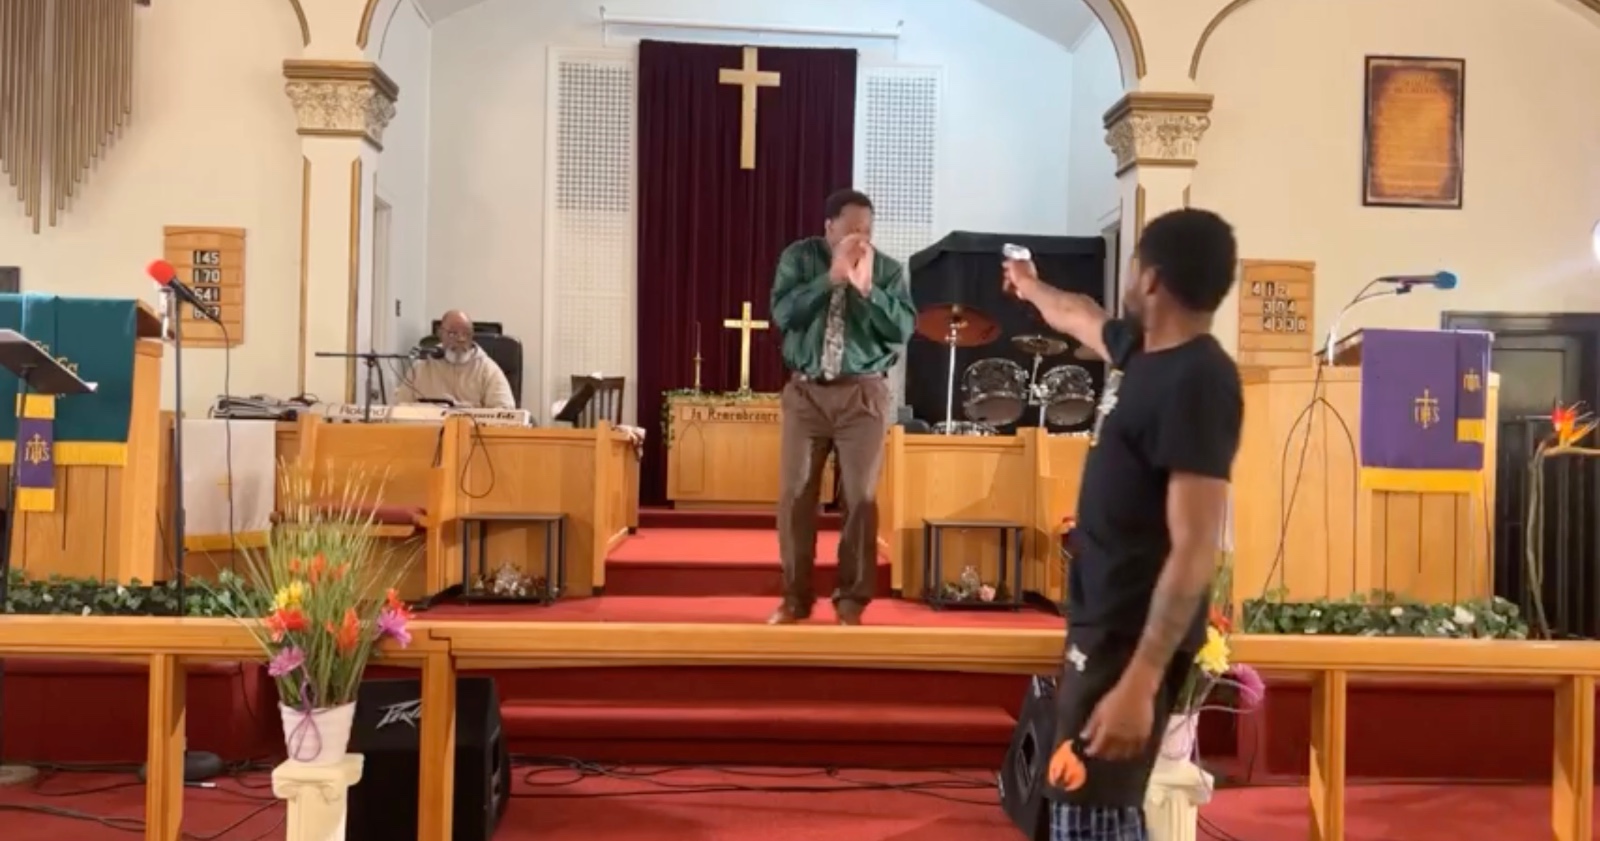 [VIDEO] Hombre apunta con un arma a un pastor